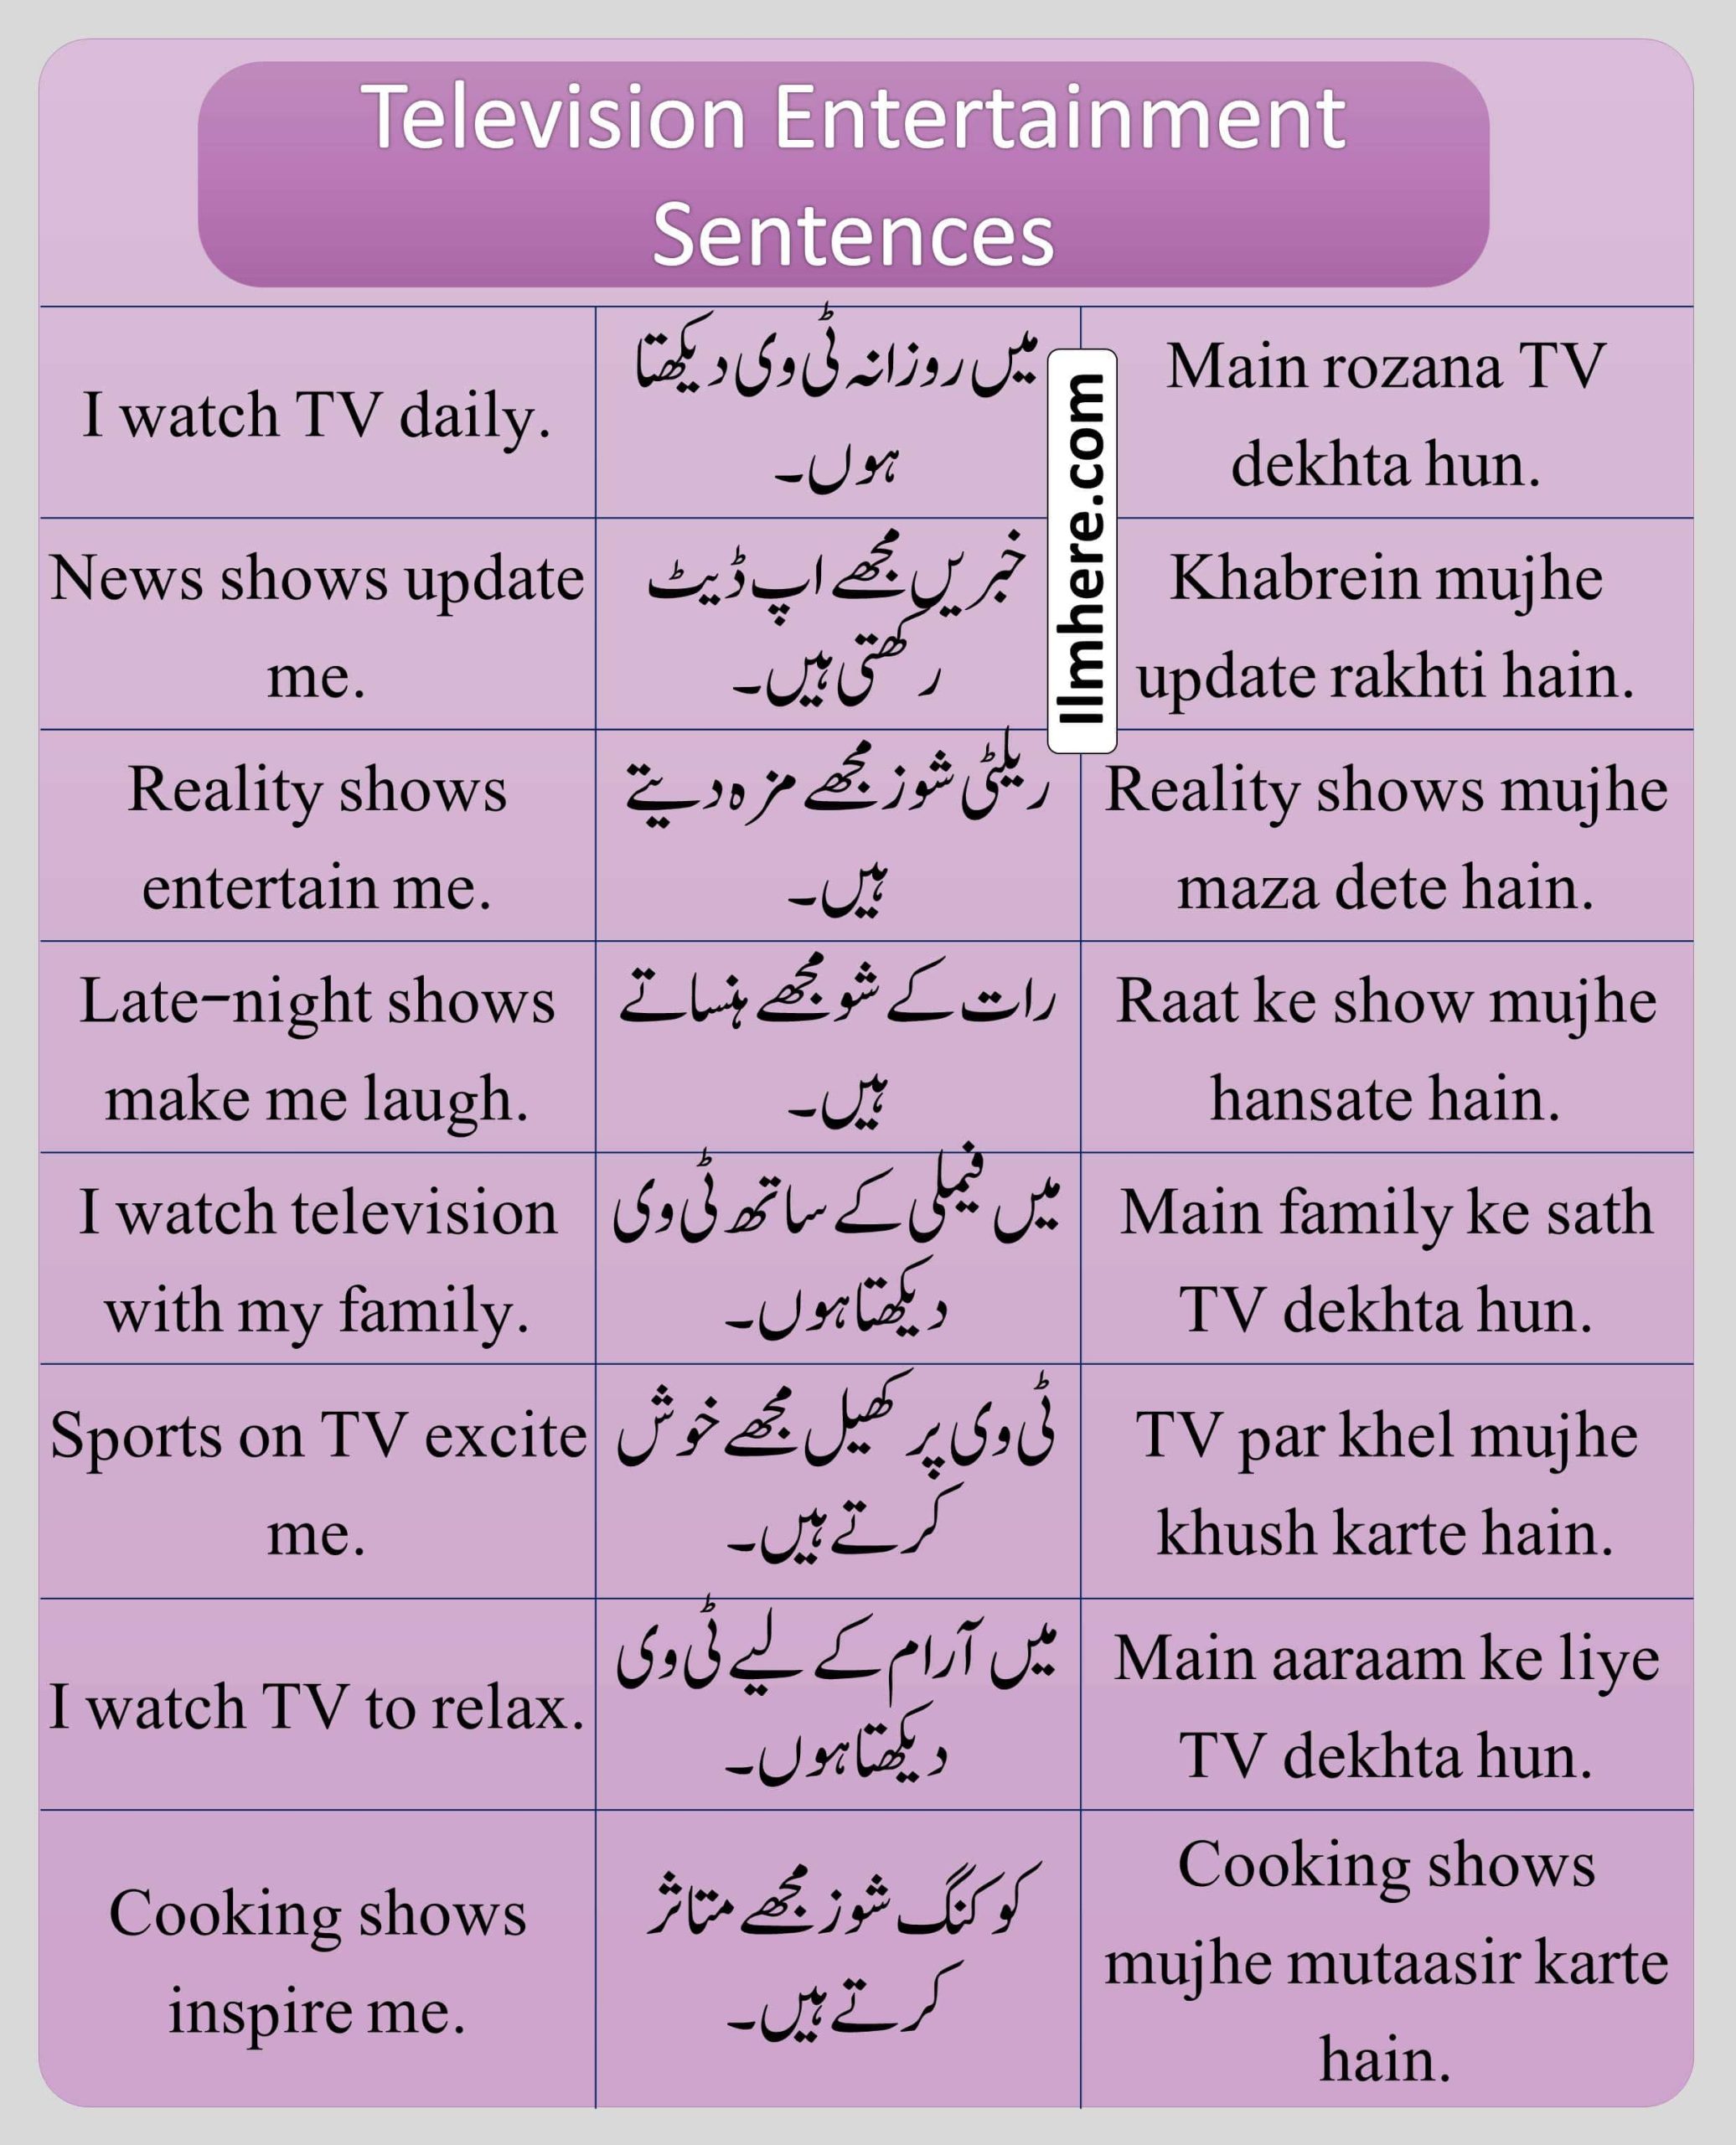 Television Entertainment Sentences